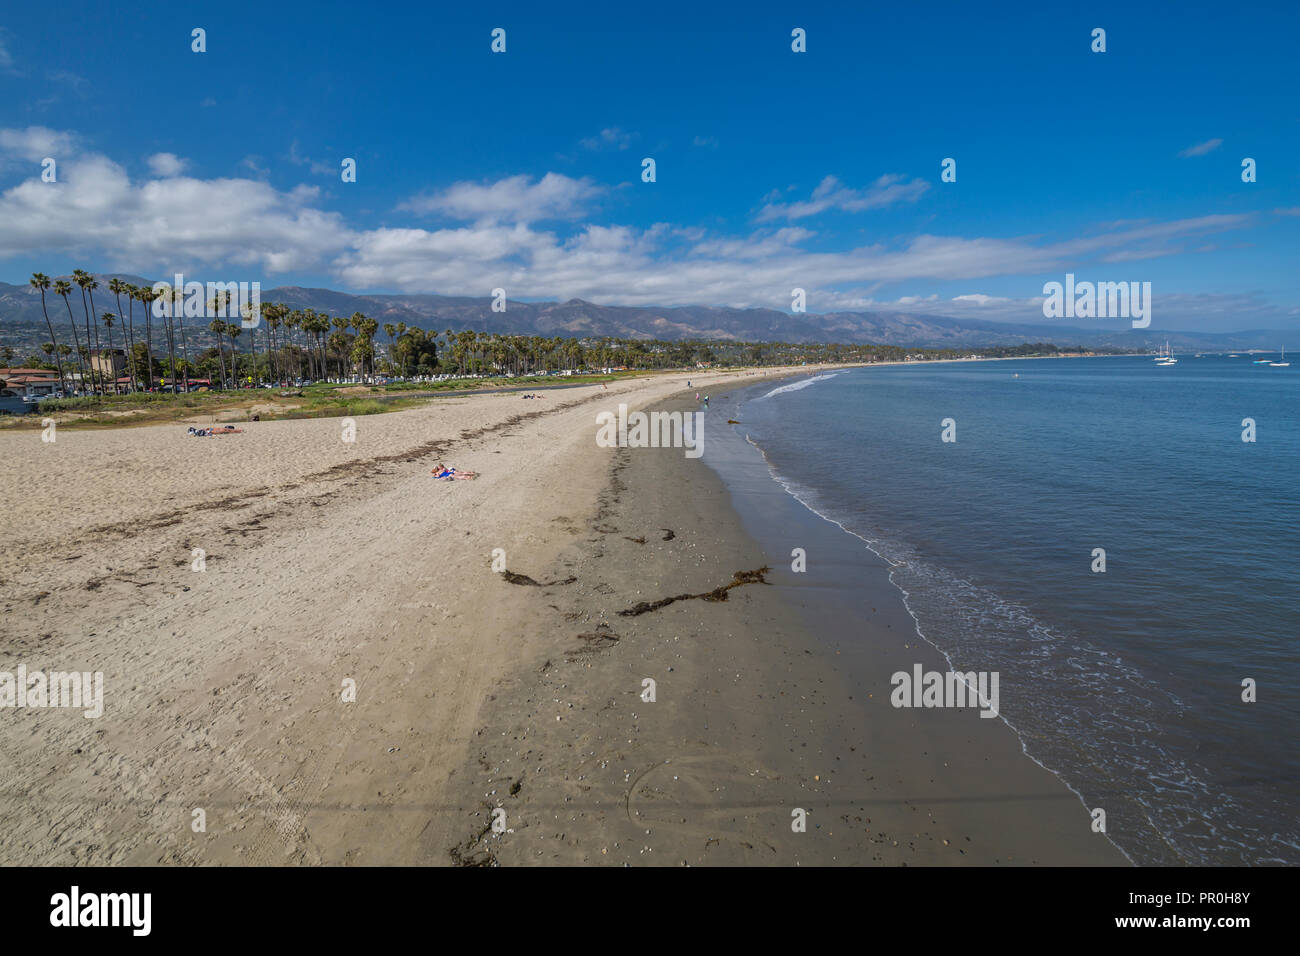 Vue sur la plage de Stearns Wharf, Santa Barbara, Santa Barbara County, Californie, États-Unis d'Amérique, Amérique du Nord Banque D'Images